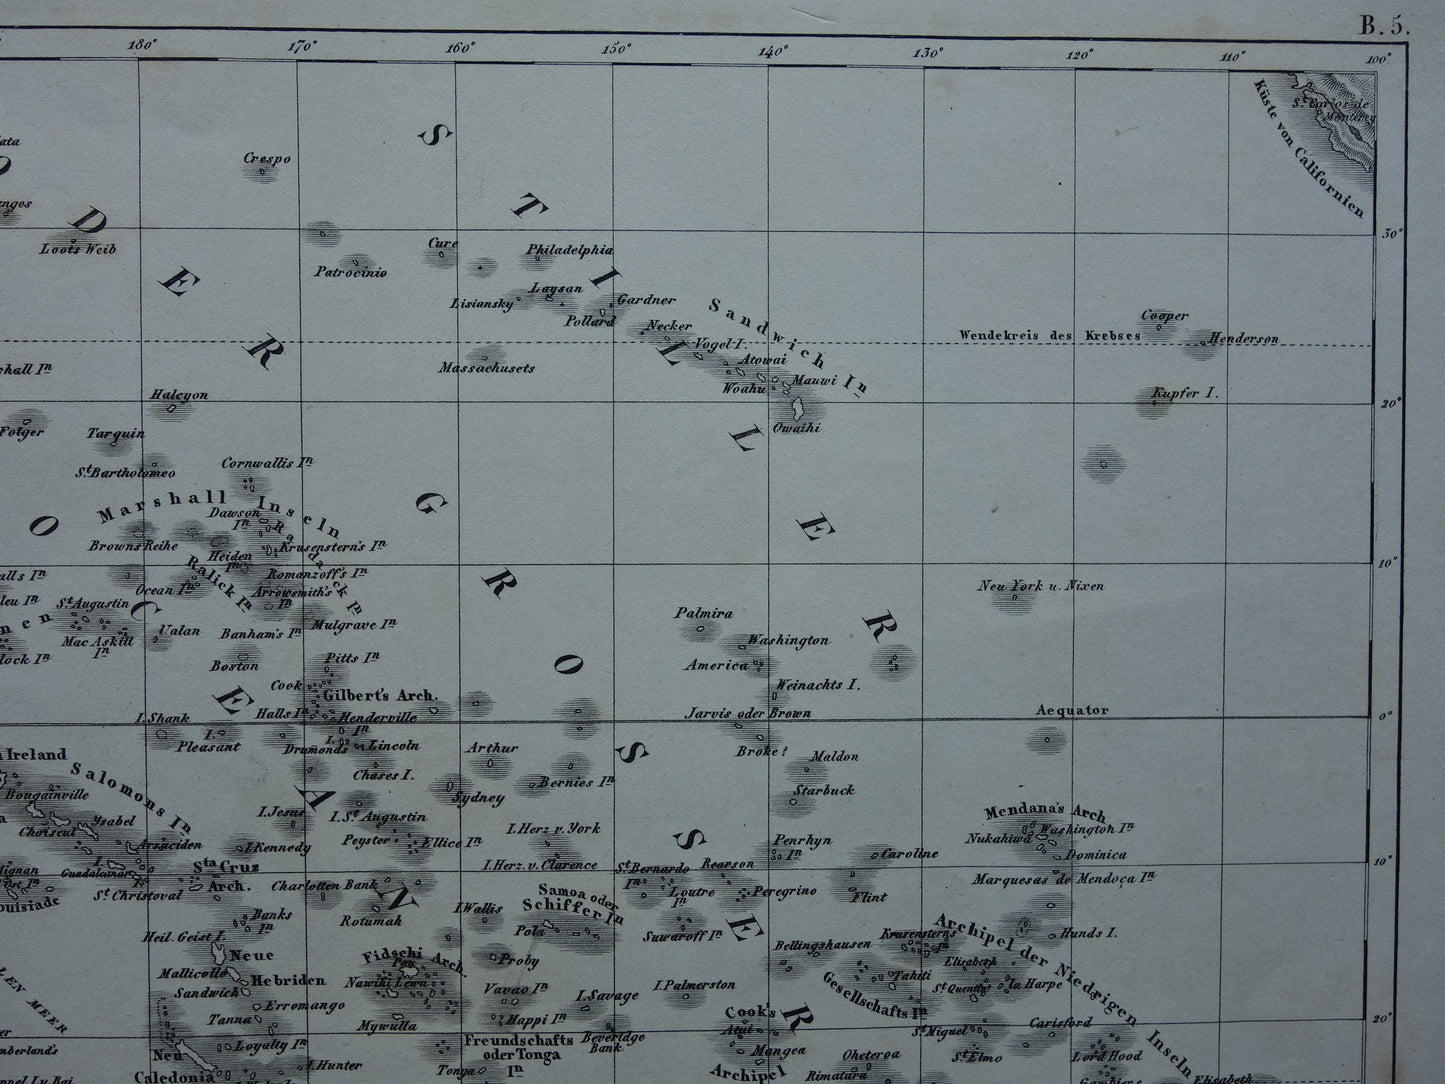 OCEANIË antieke kaart van Oceanië 170+ jaar oude landkaart van continent met Australië Nieuw-Zeeland uit 1849 - originele vintage historische kaarten